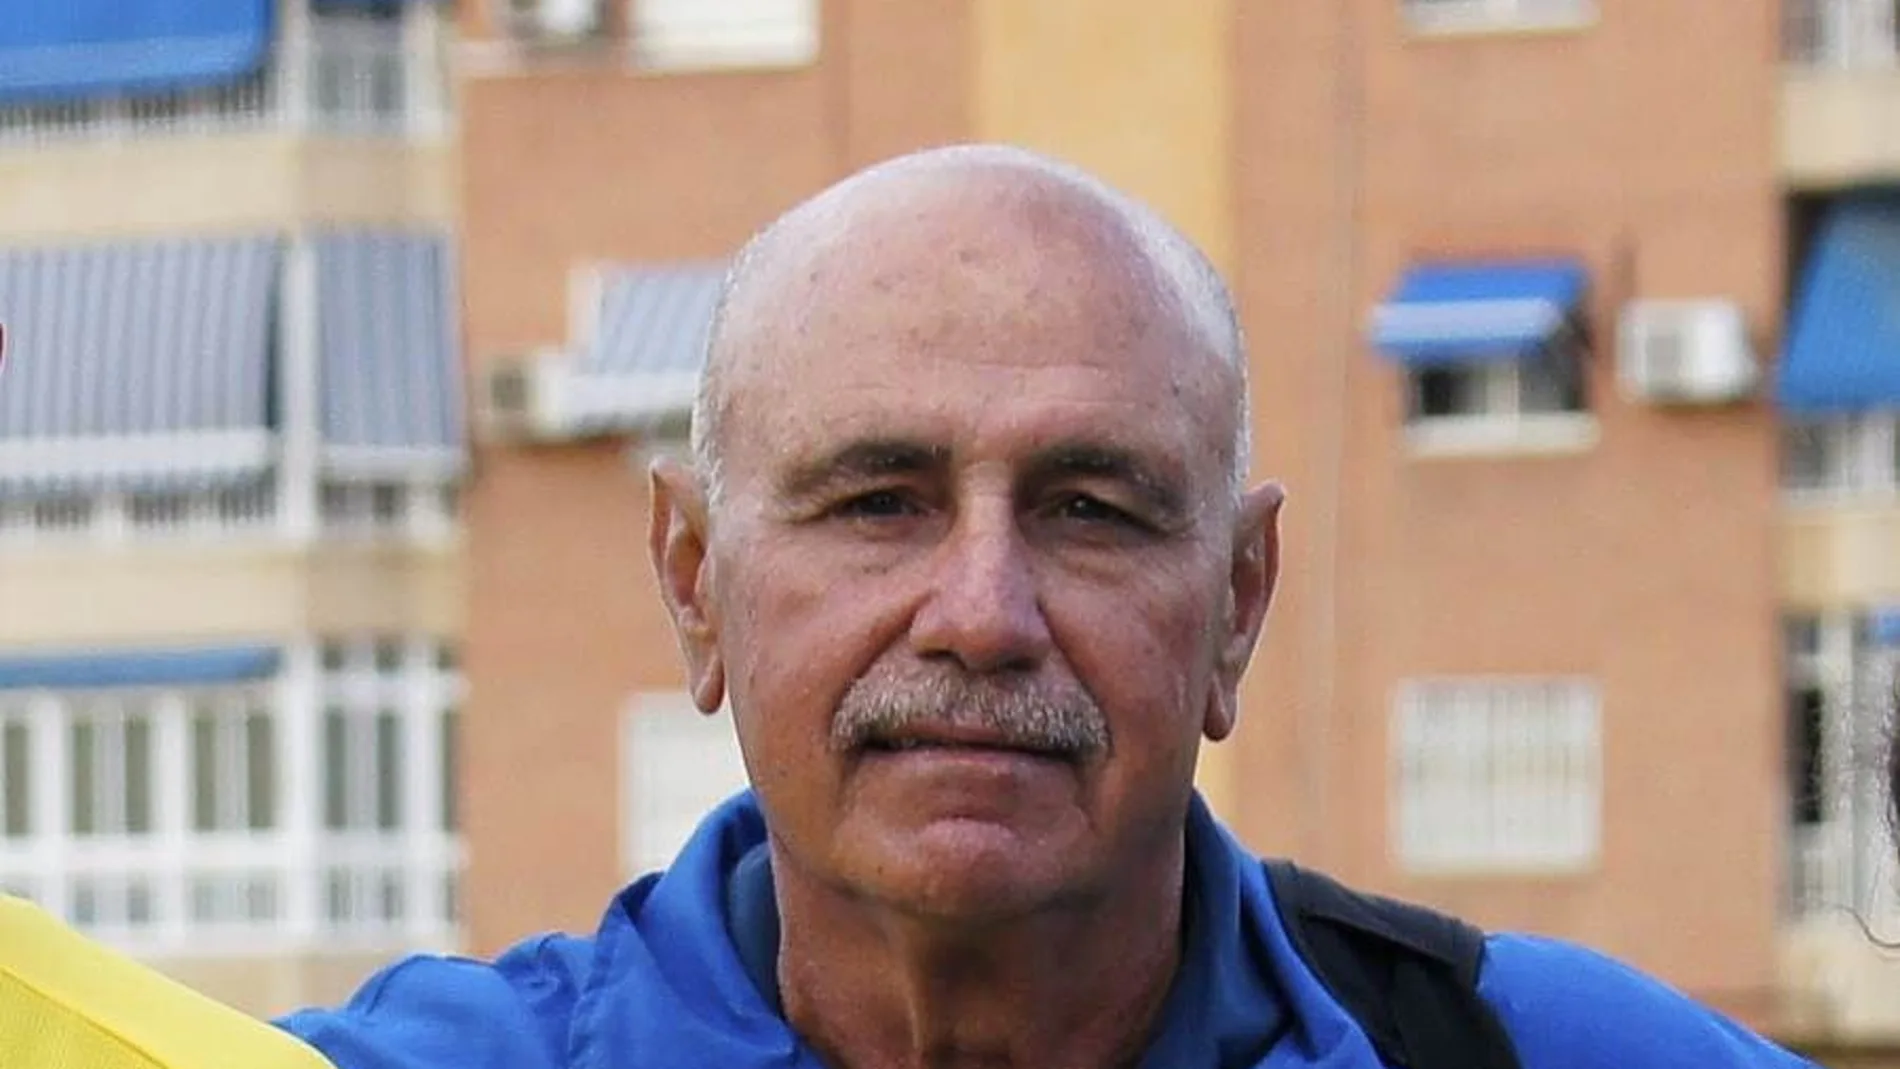 El exseleccionador nacional de atletismo Miguel Ángel Millán Sagrera